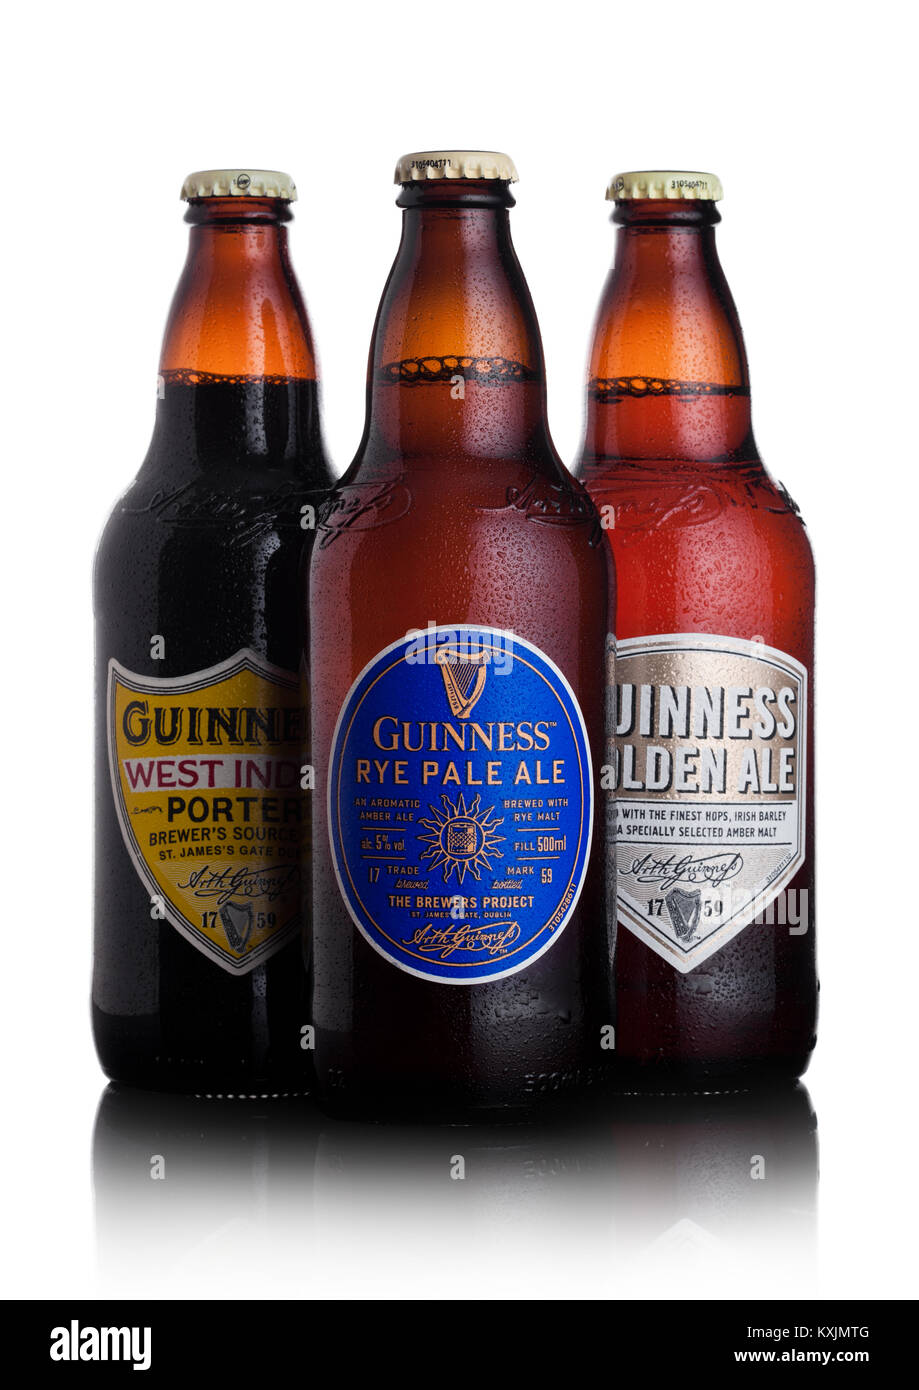 Londres, Reino Unido - 02 de enero de 2018: botellas de cerveza Guinness centeno pale ale, West Indies porter y golden ale cerveza en blanco. Se ha elaborado la cerveza Guinness pecado Foto de stock